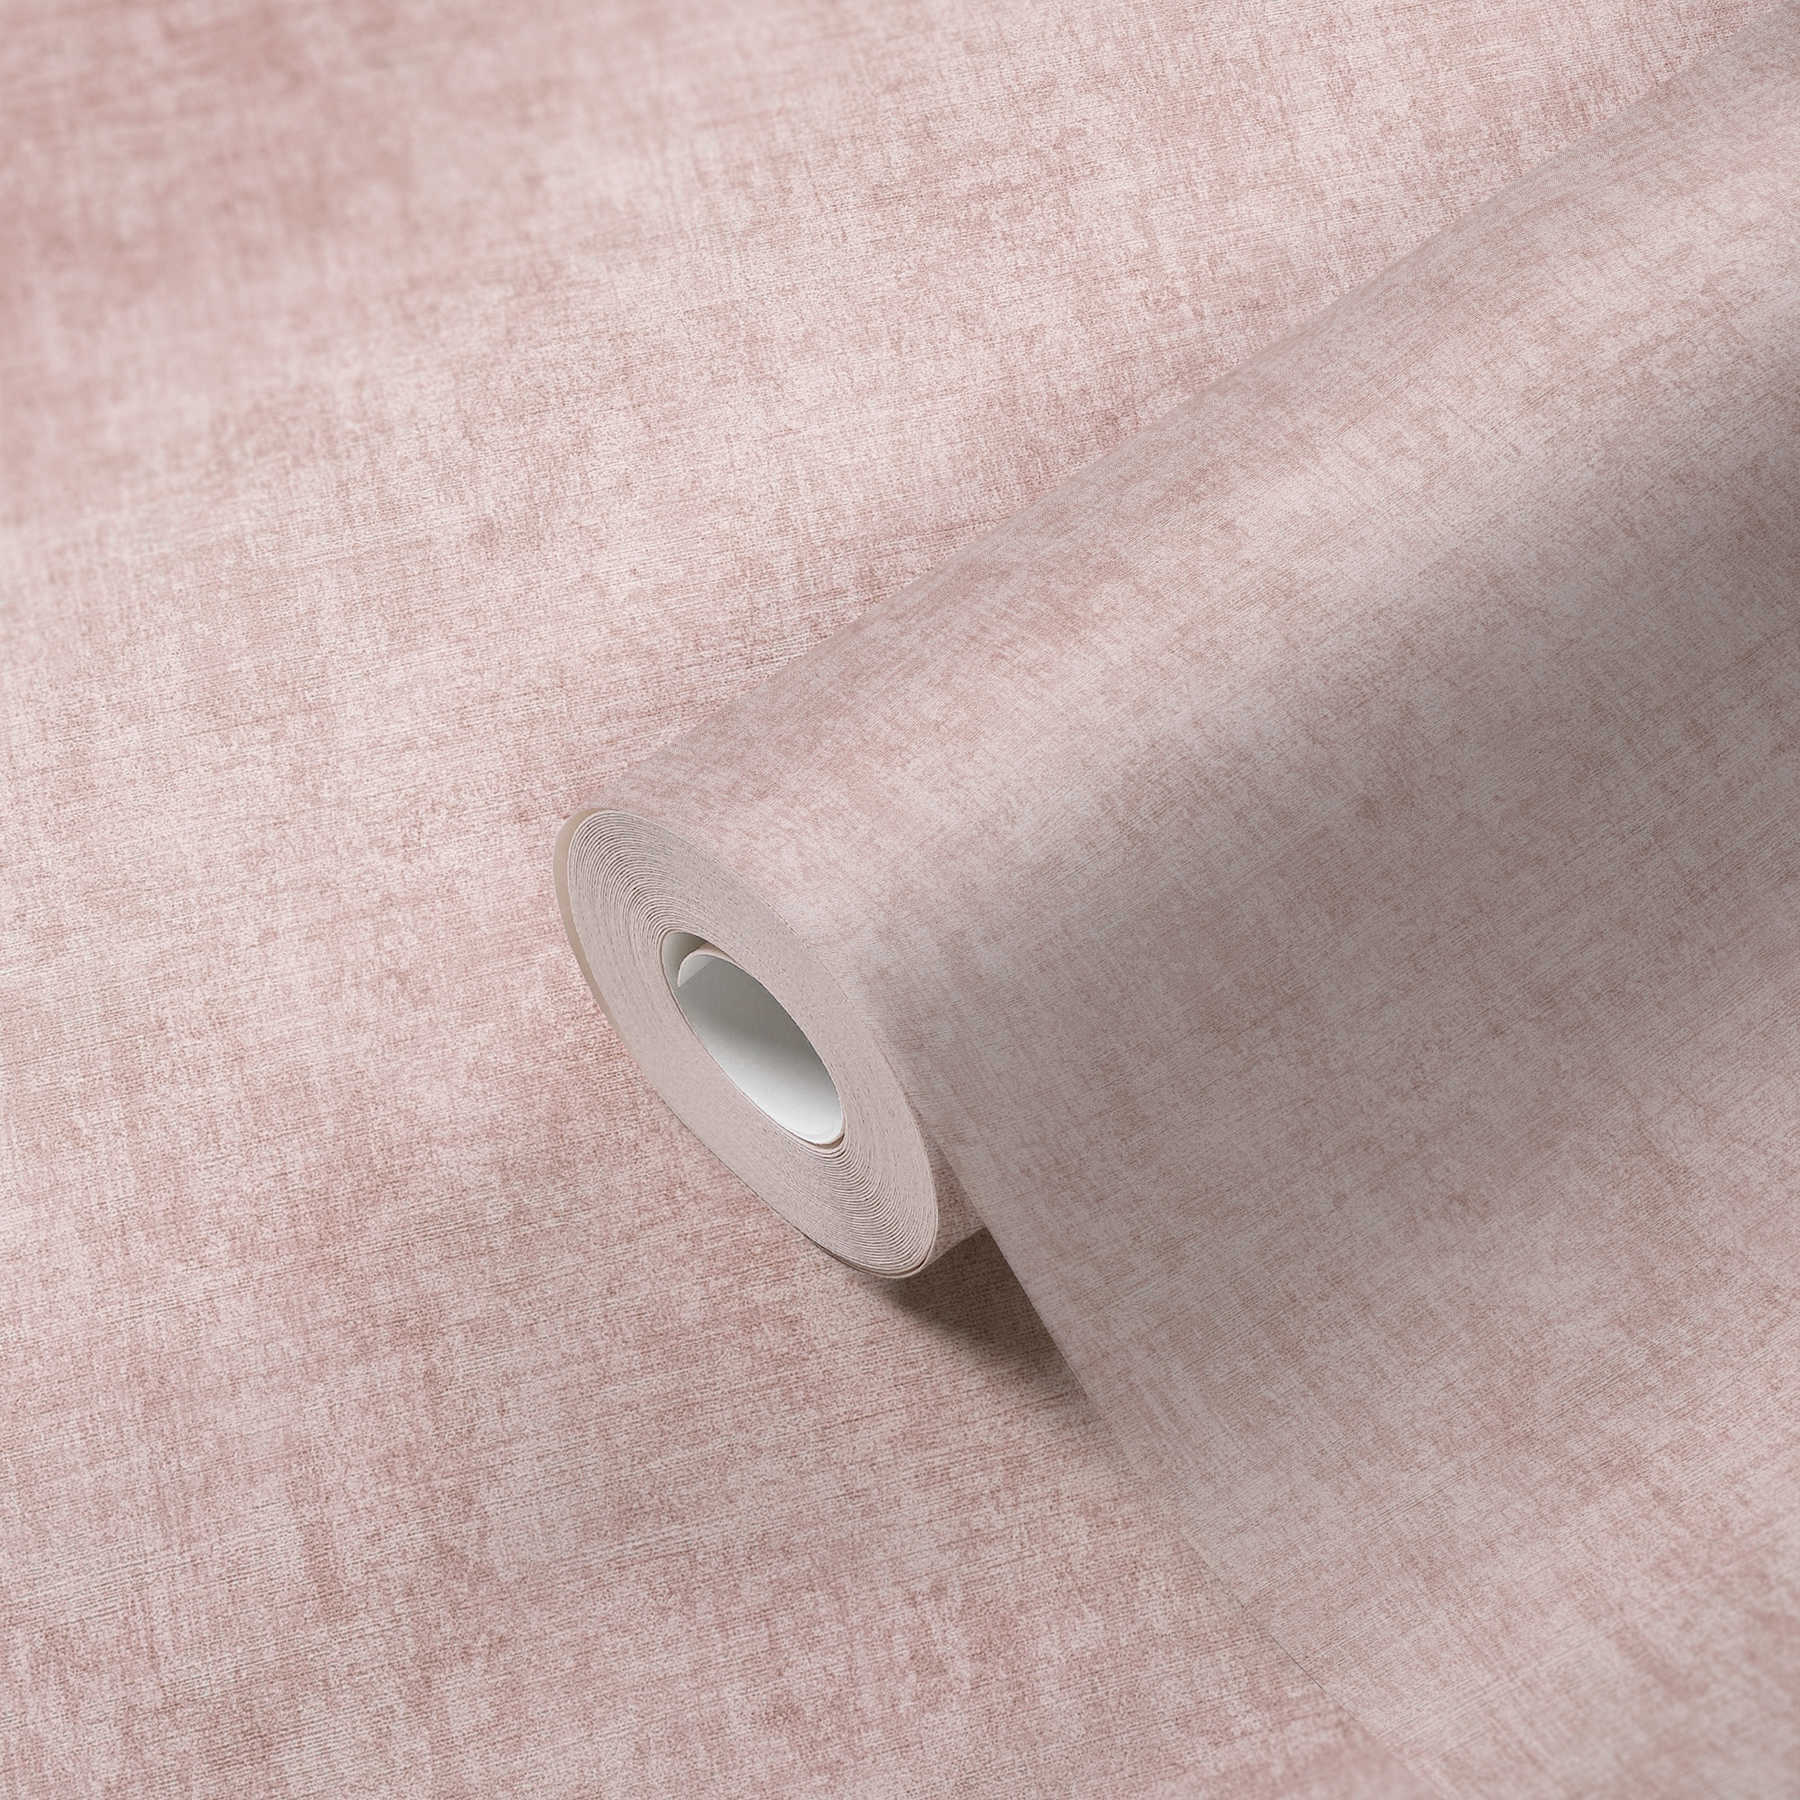             Non-woven wallpaper plain, mottled, textured pattern - pink
        